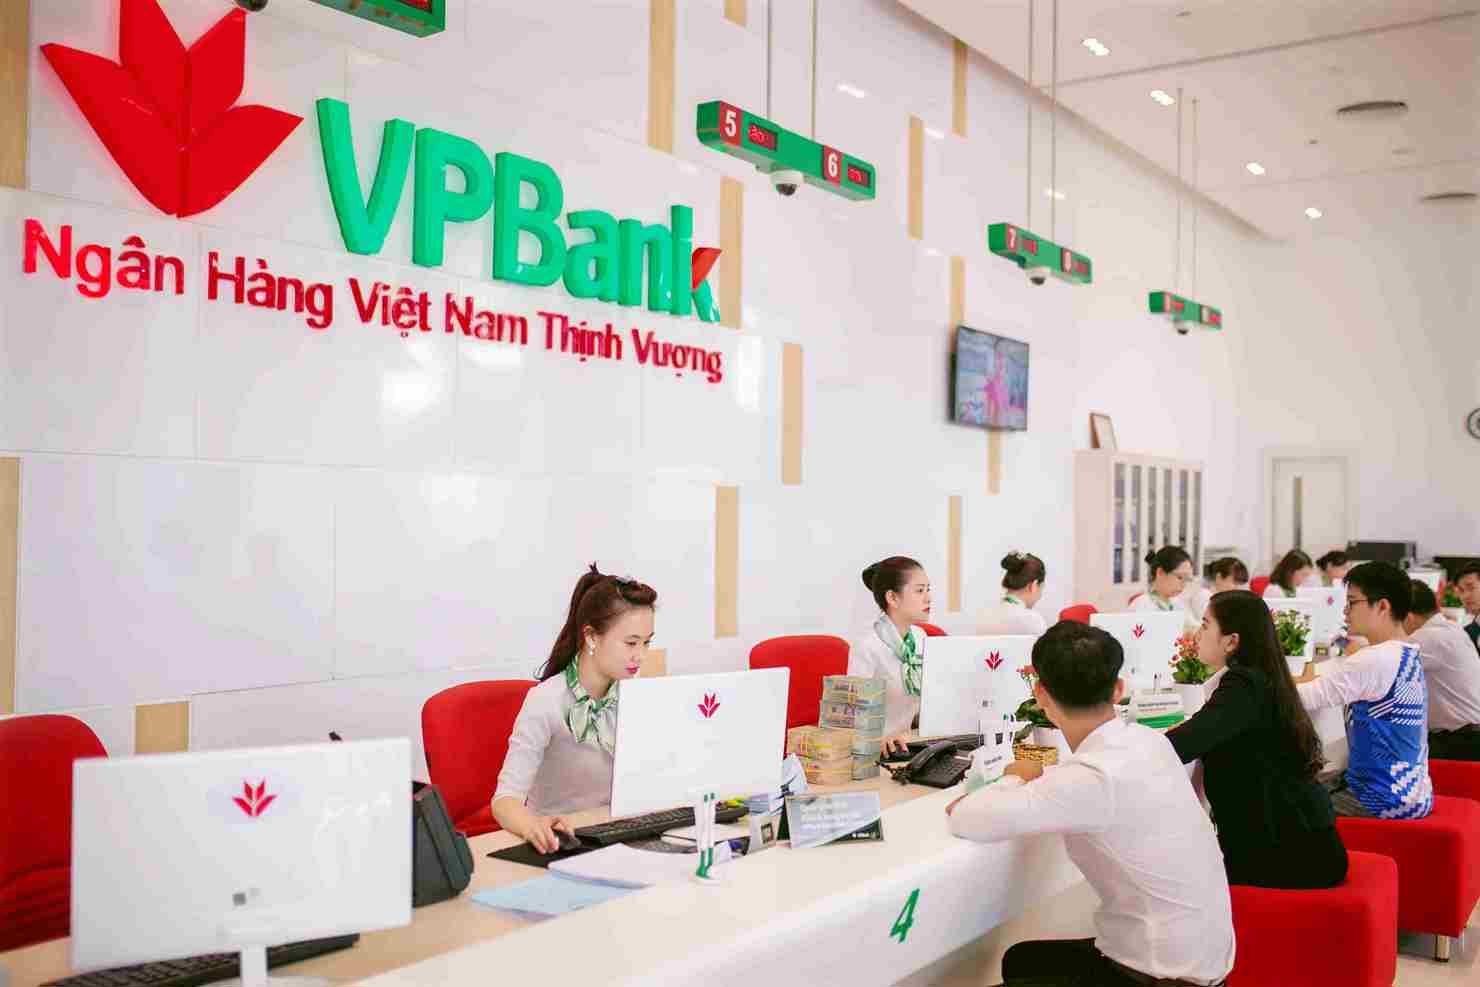 VPBank cũng là một trong 8 ngân hàng có chỉ số nhận biết thương hiệu tốt nhất ngành ngân hàng Việt Nam hiện tại. Nguồn: Internet